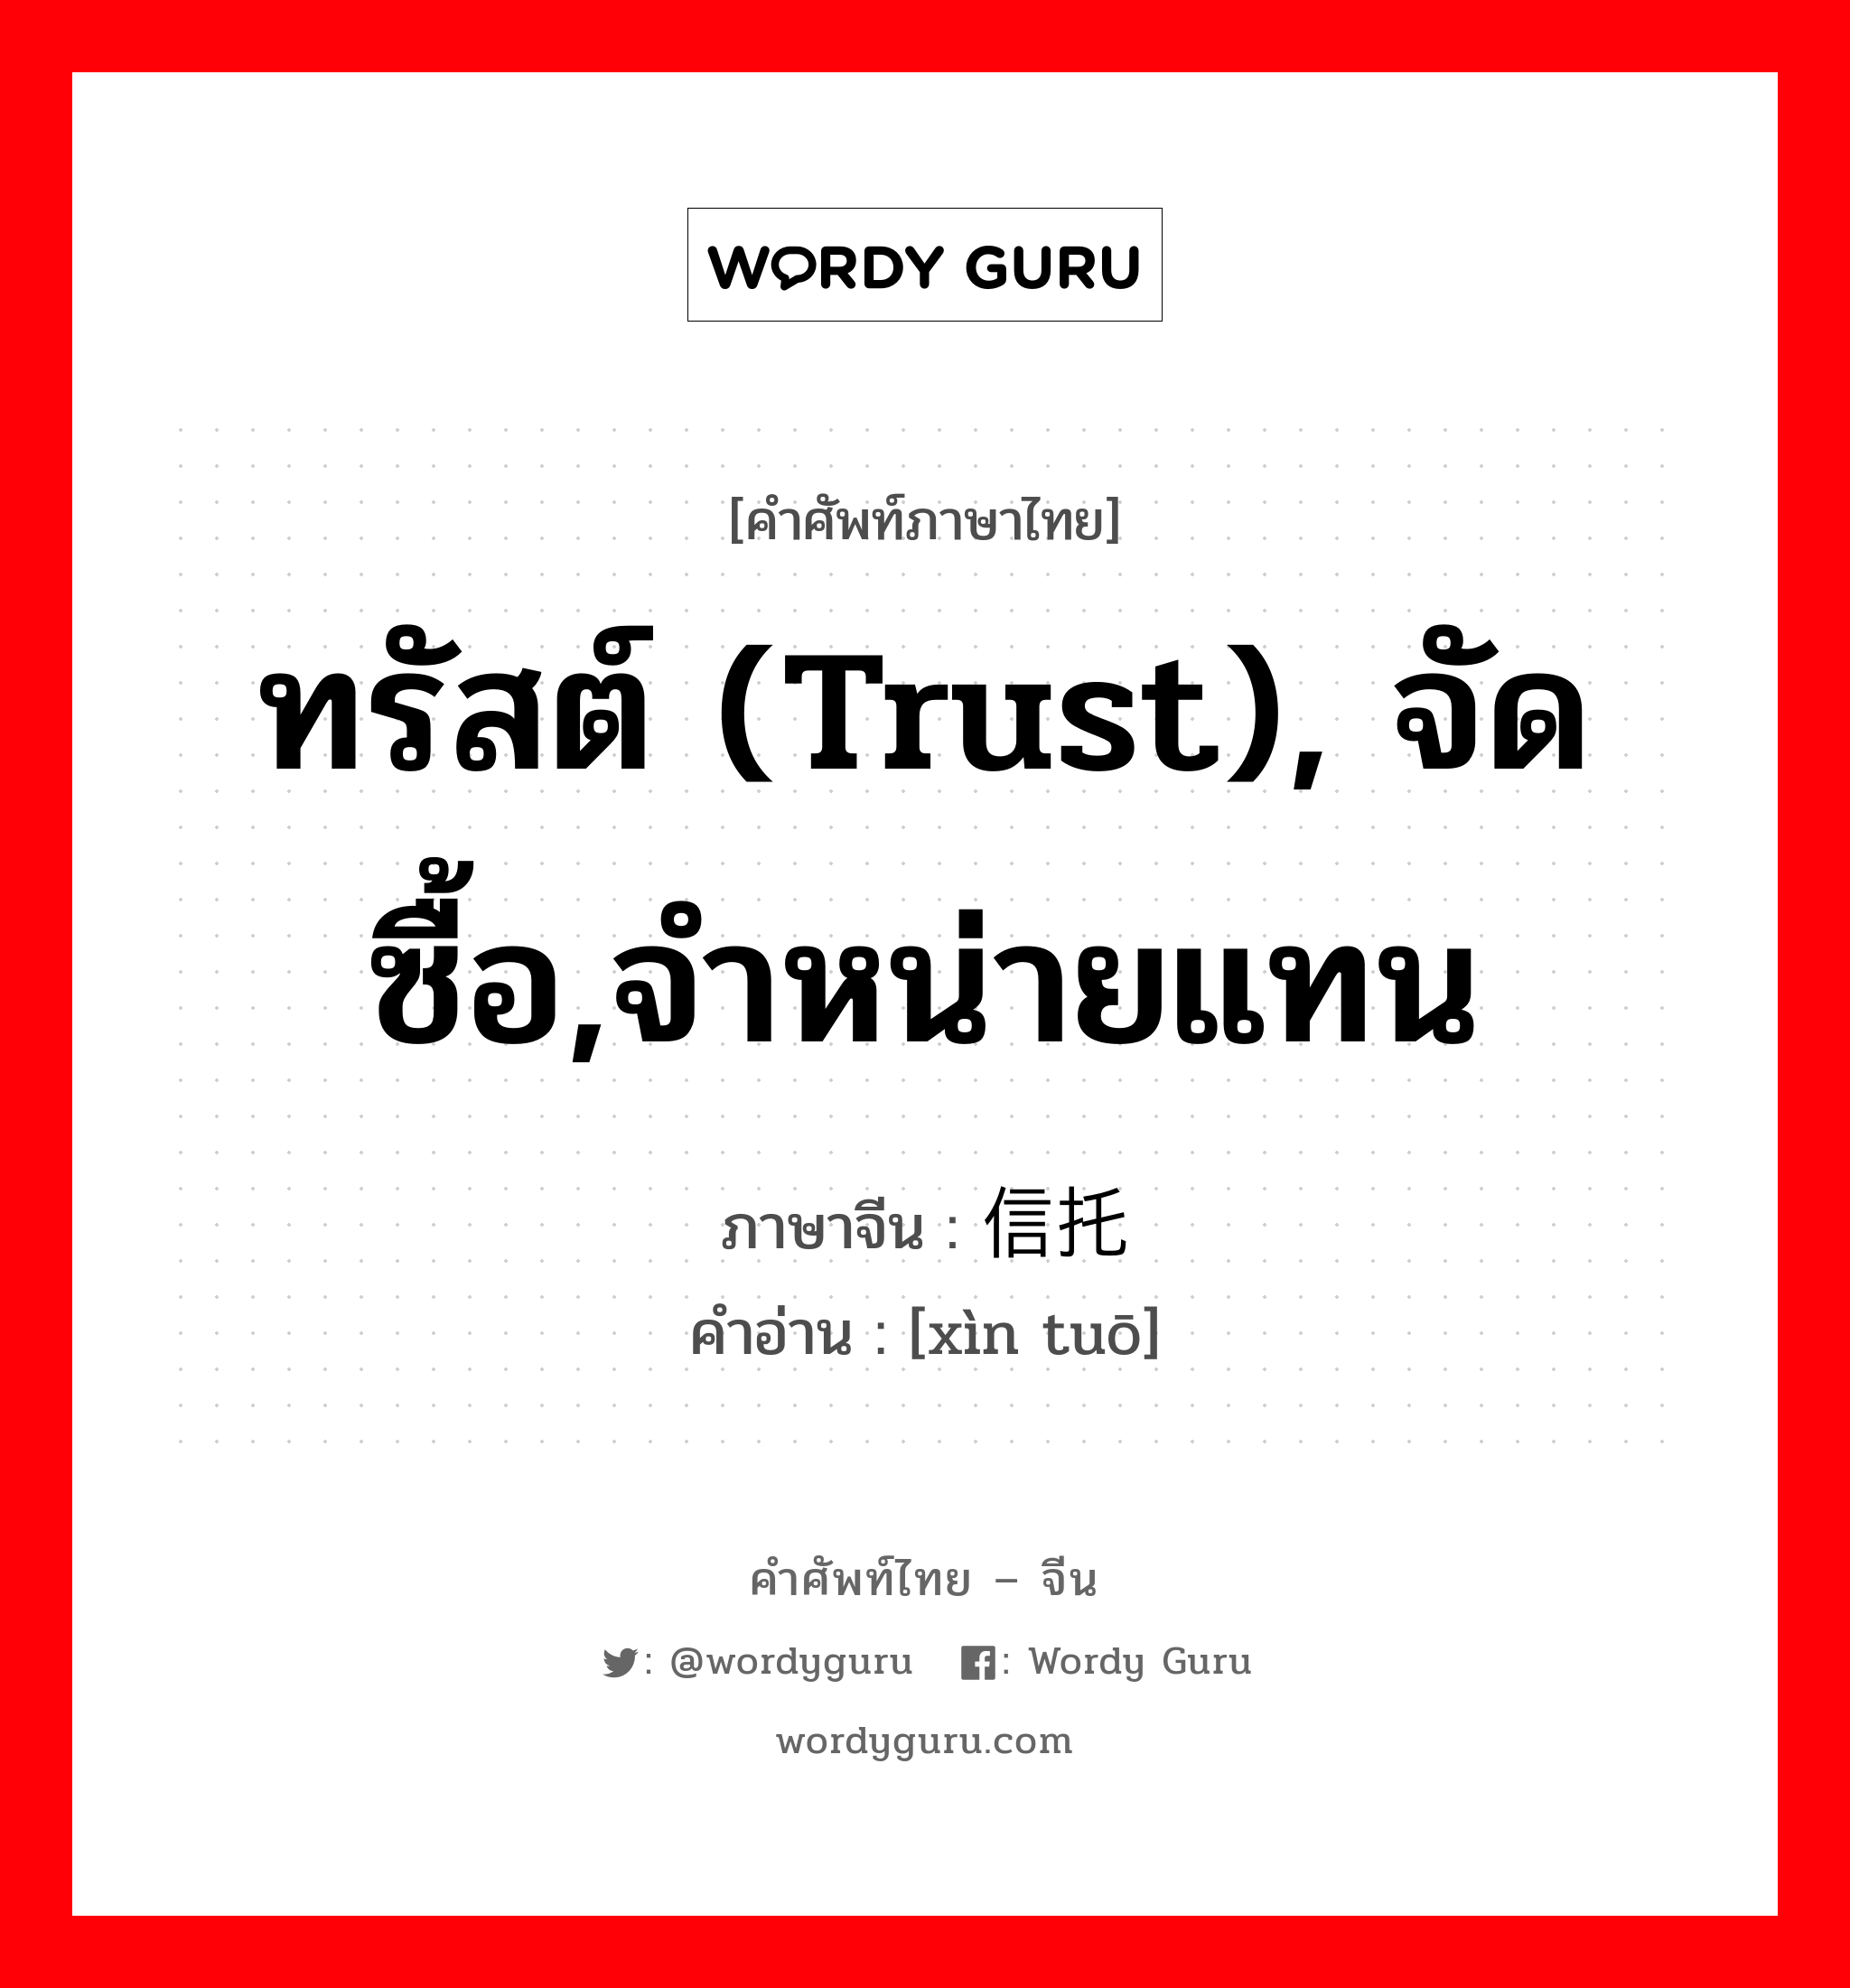 ทรัสต์ (trust), จัดซื้อ,จำหน่ายแทน ภาษาจีนคืออะไร, คำศัพท์ภาษาไทย - จีน ทรัสต์ (trust), จัดซื้อ,จำหน่ายแทน ภาษาจีน 信托 คำอ่าน [xìn tuō]